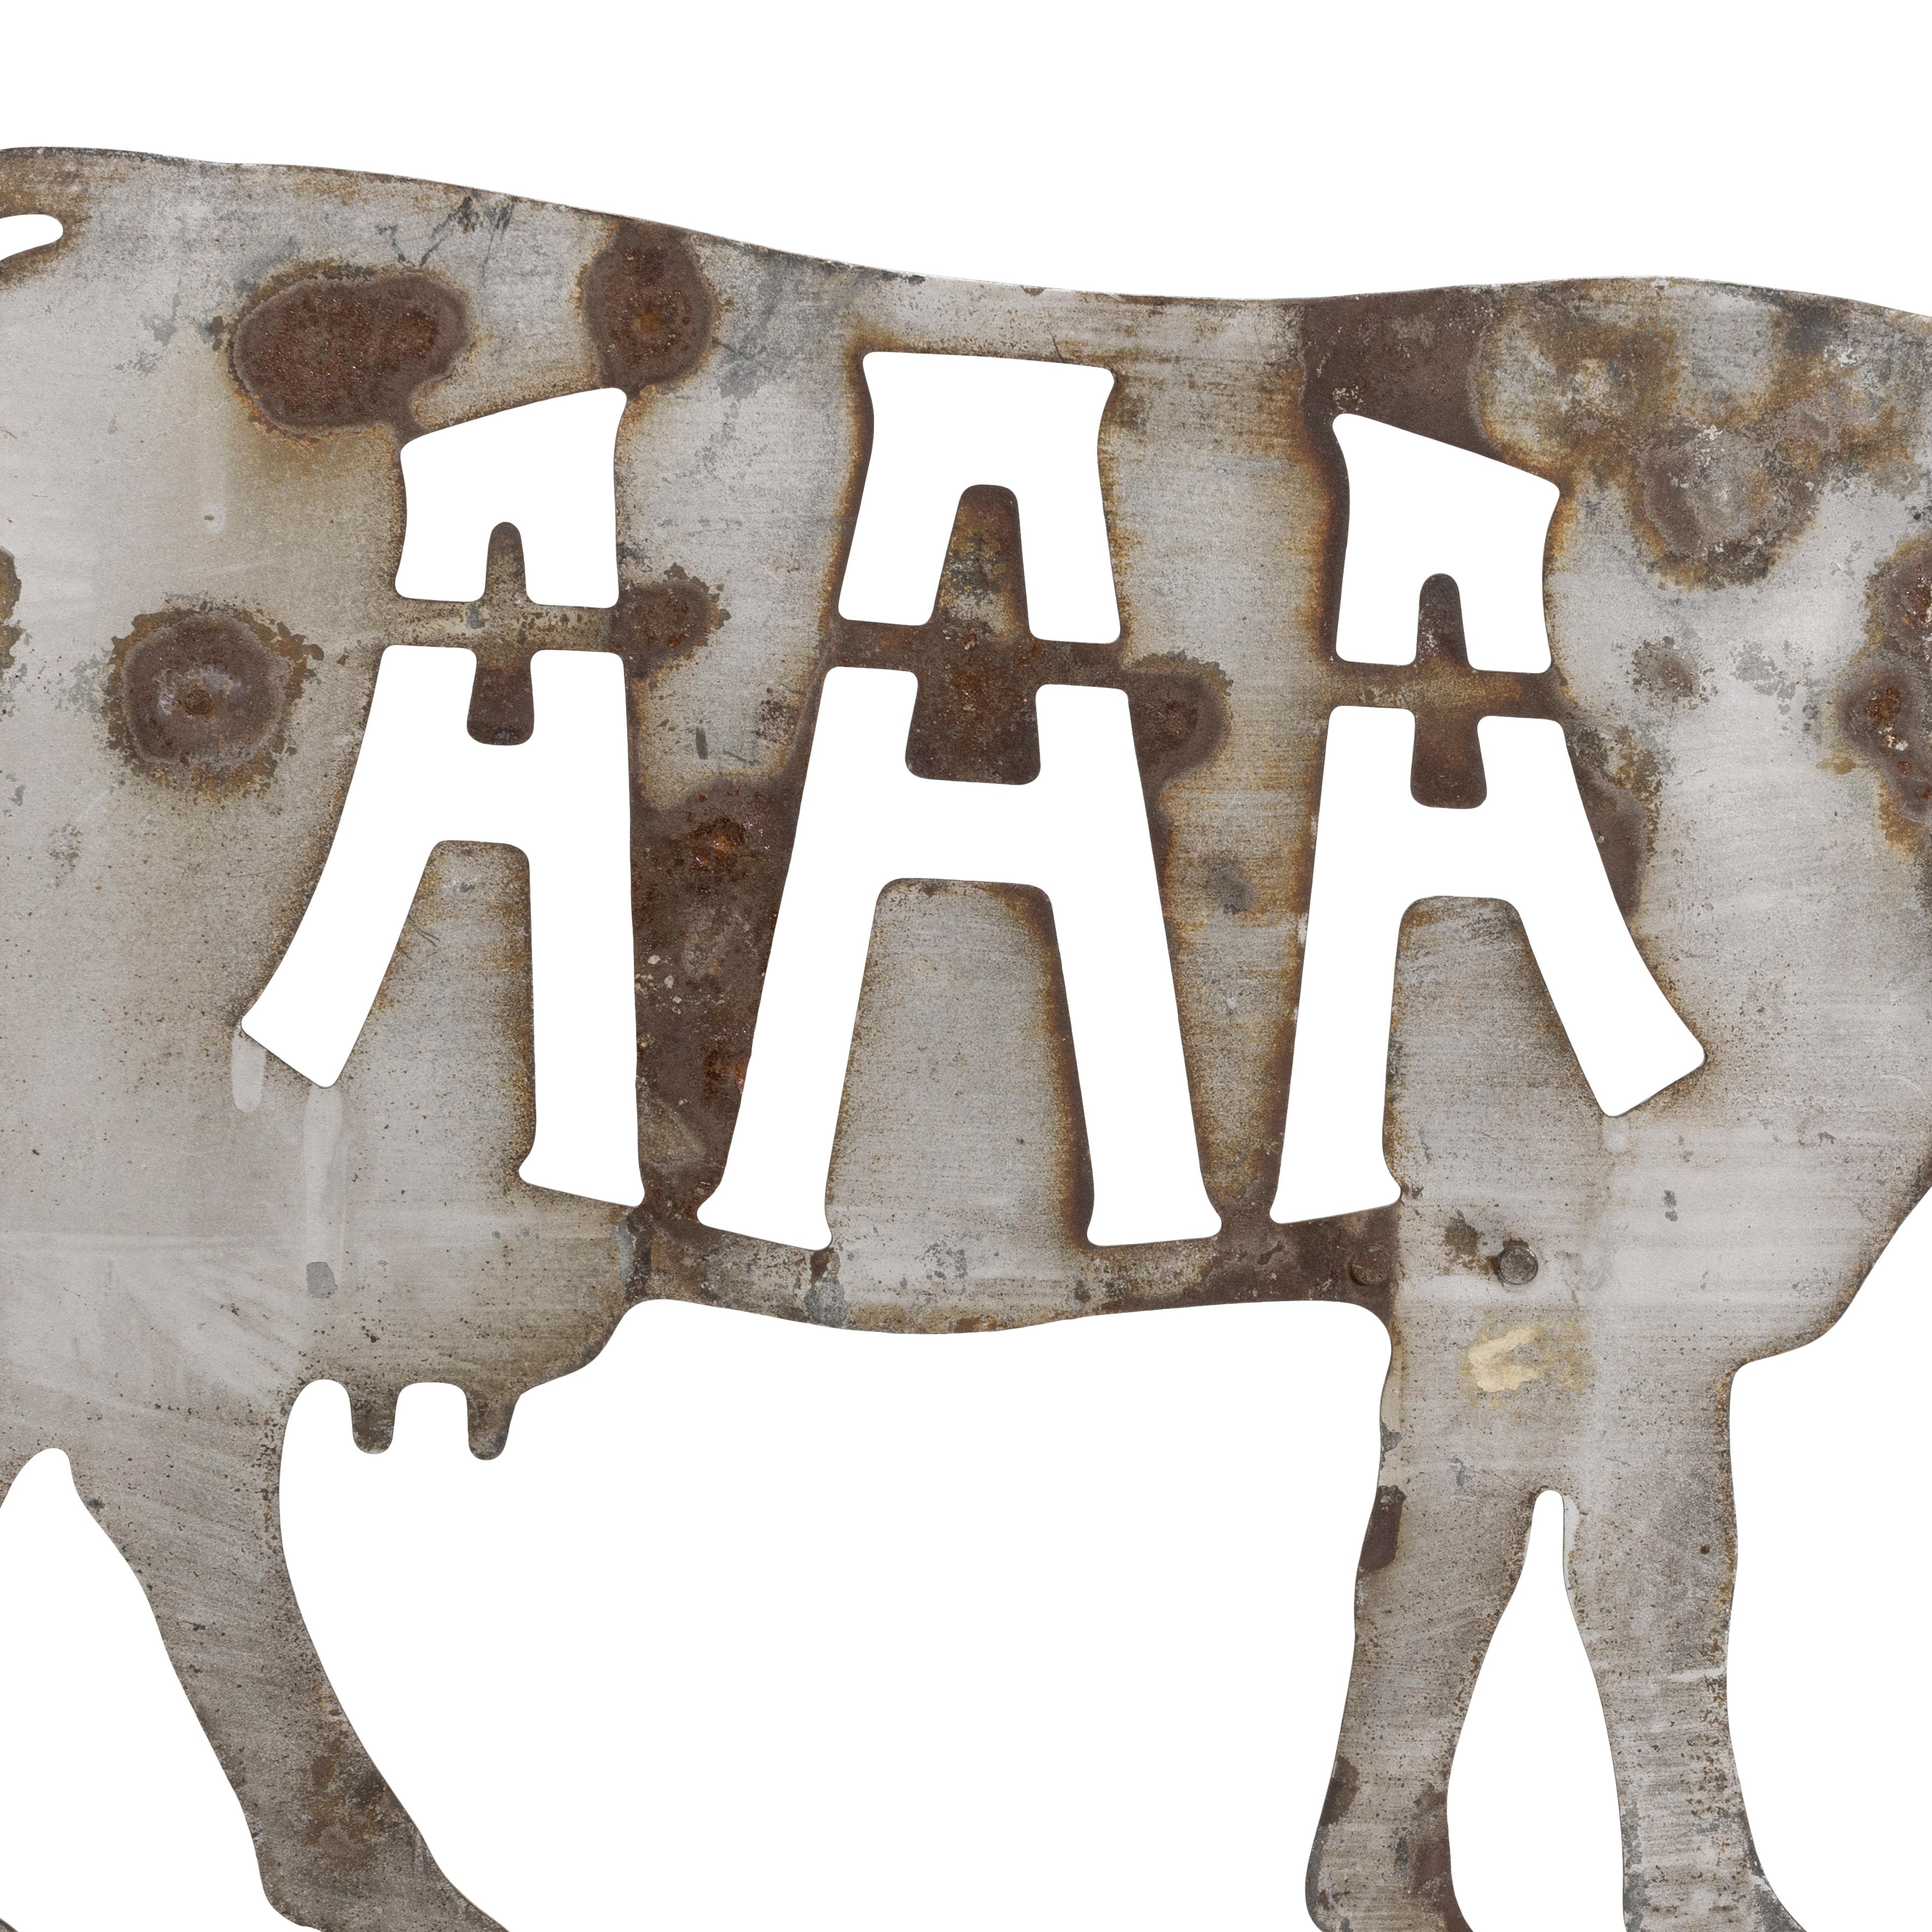 American Angus Association aus dem 19. Jahrhundert, geschnittene Wetterfahne in Form einer Kuh mit Ausschnitten A-A-A. Ein paar 